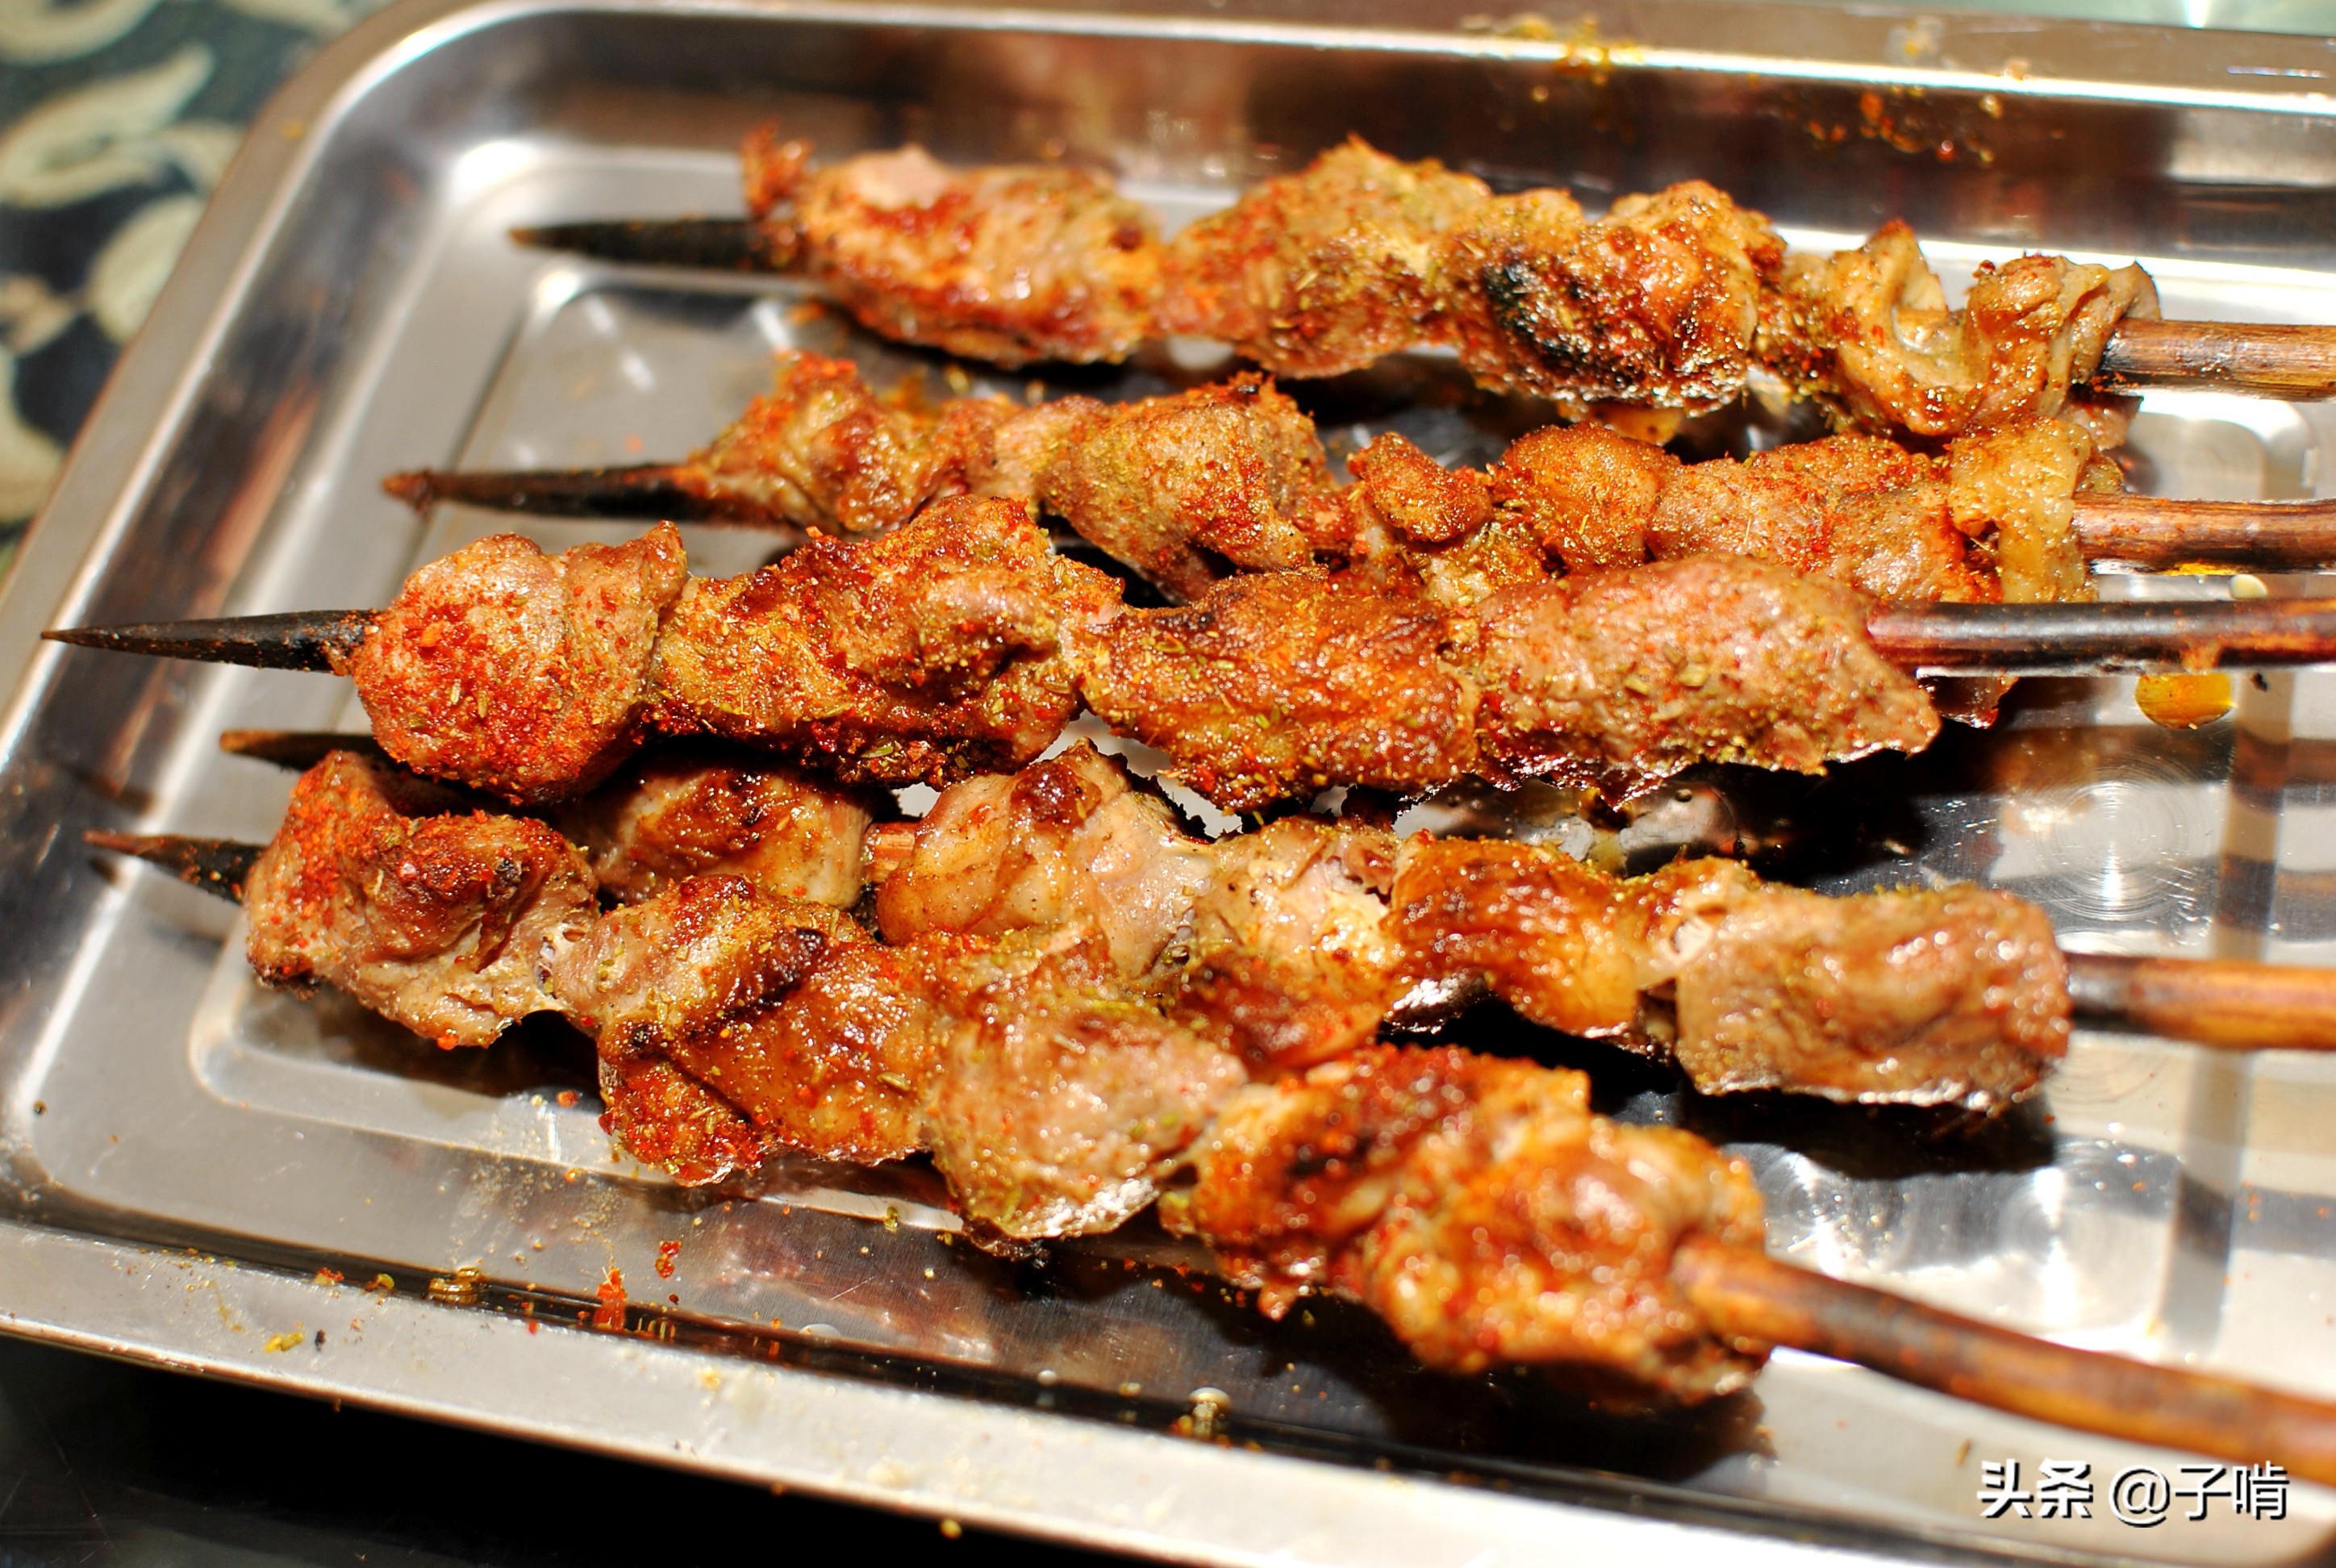 新疆烤肉当下酒菜真没挑,大串的肉吃着特别嫩,这样吃肉才够过瘾